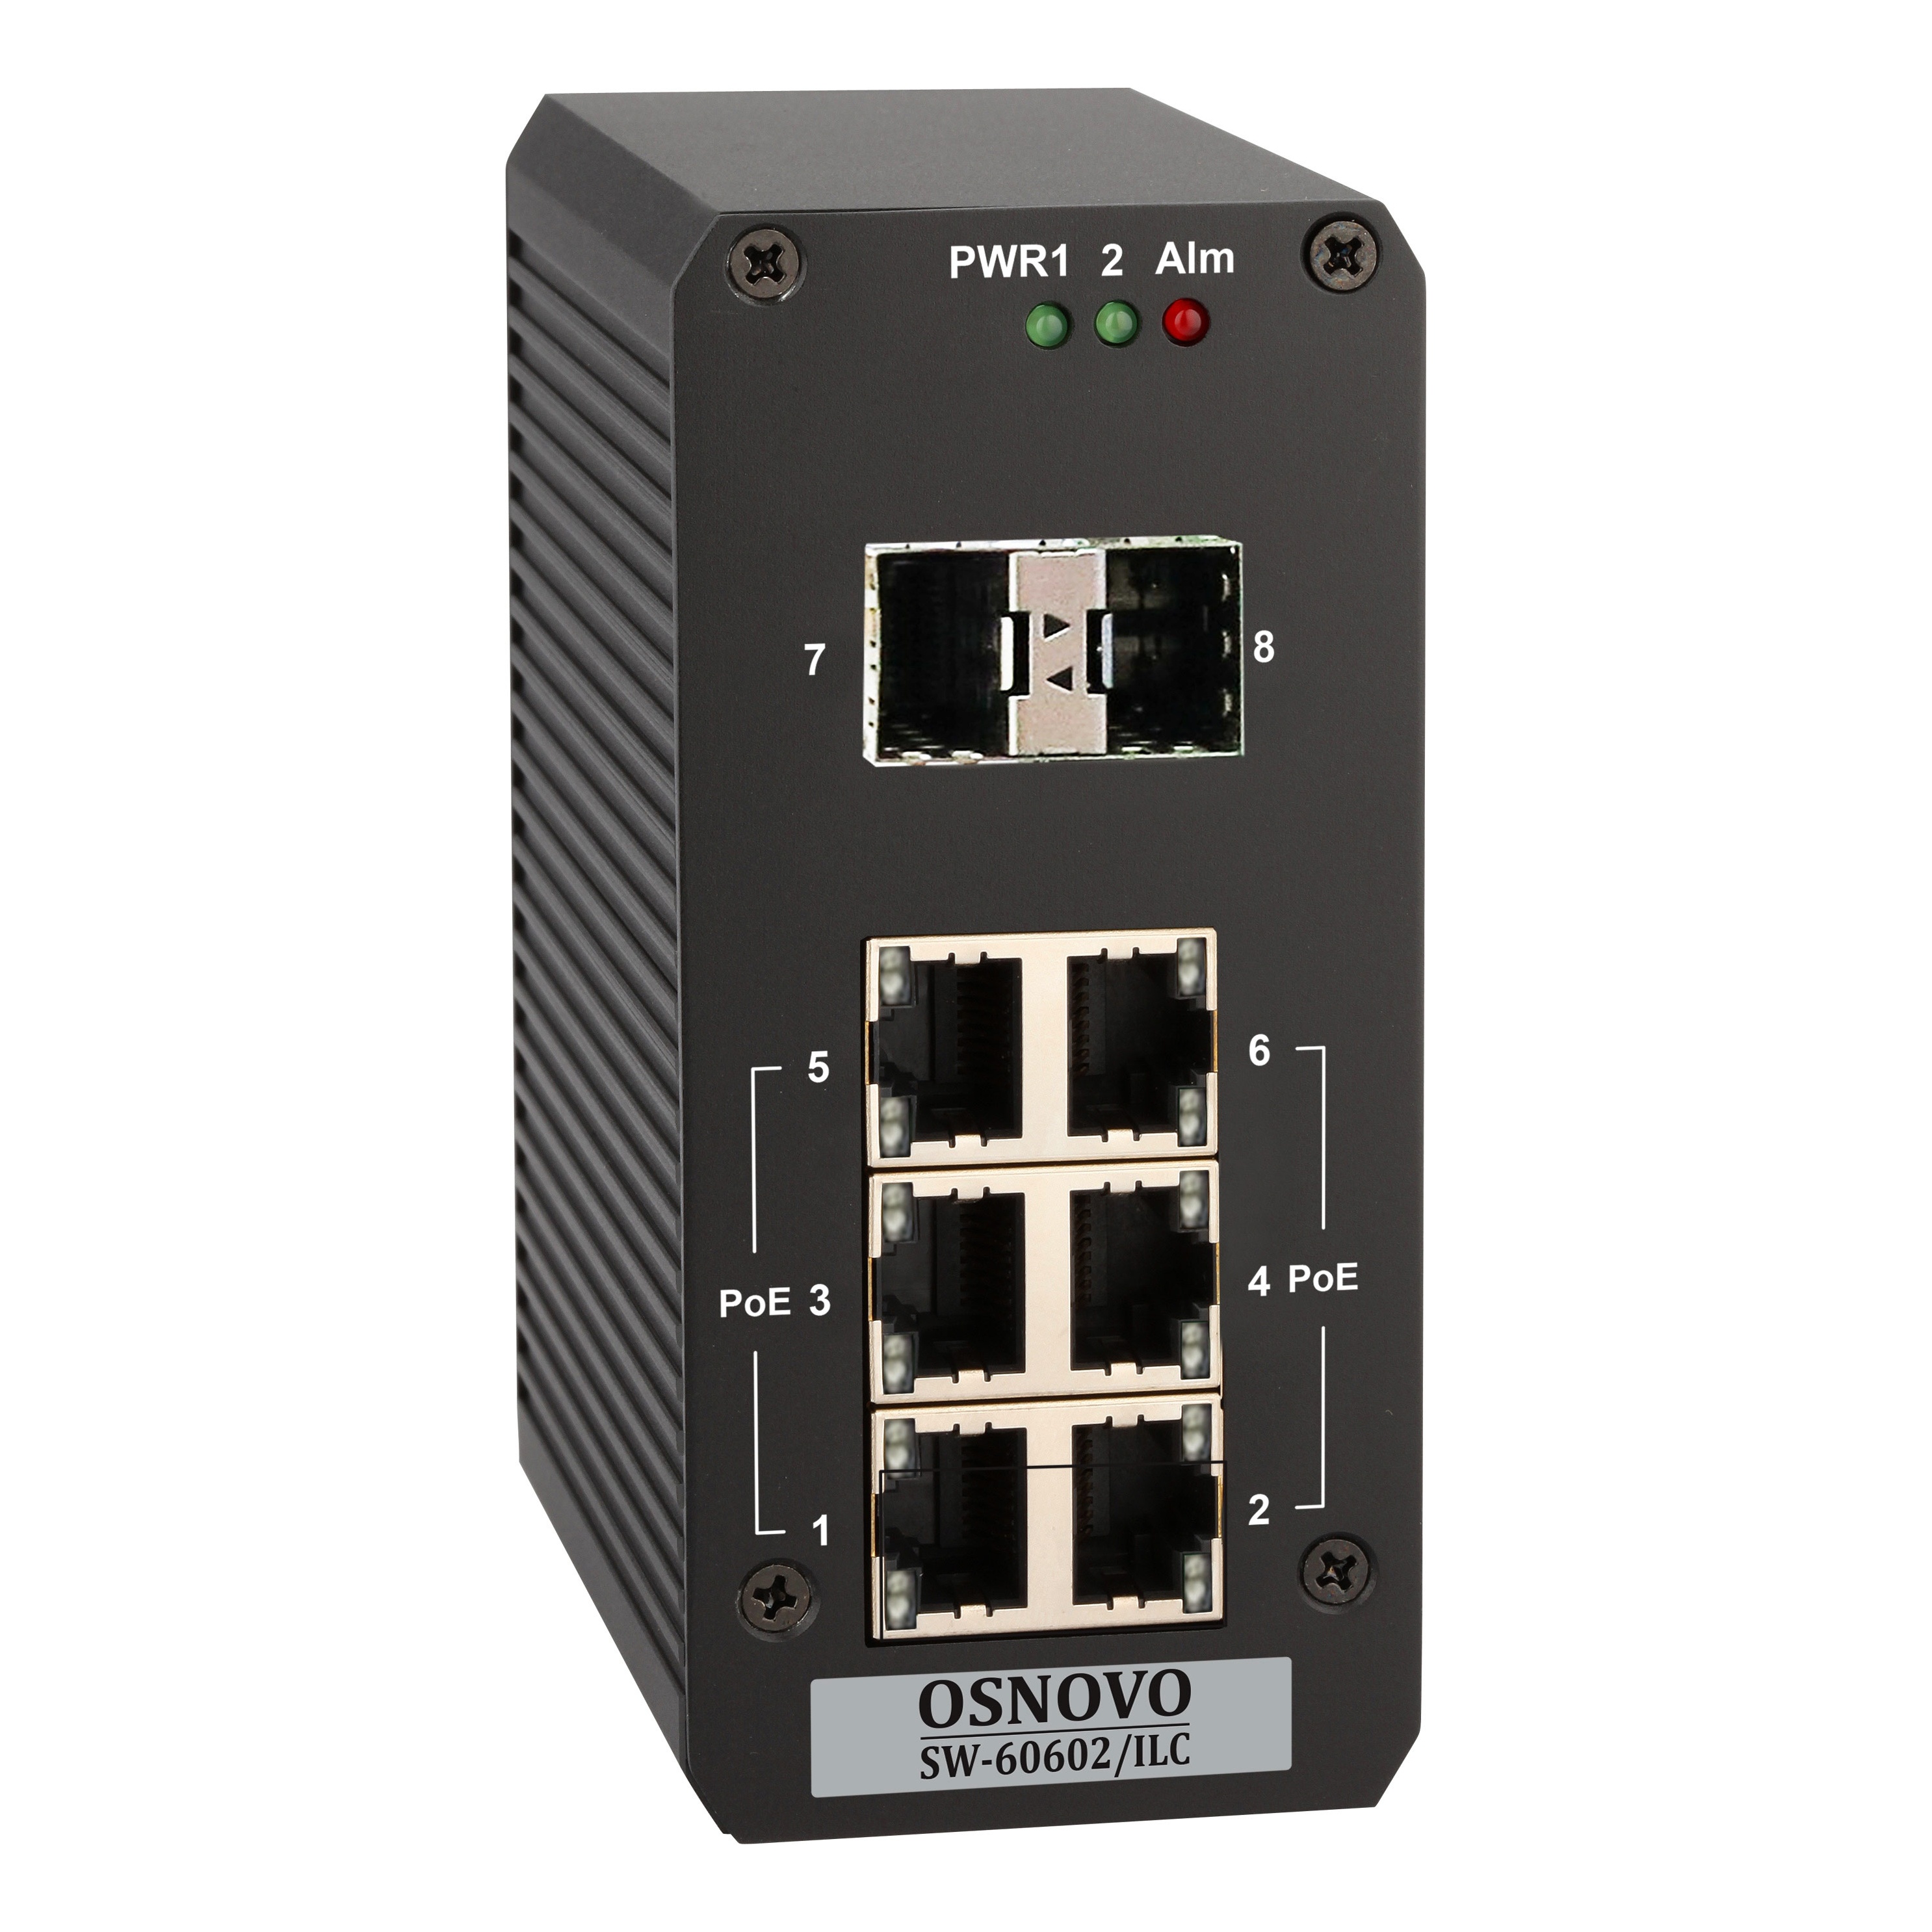 OSNOVO SW-60602/ILC SW-60602/ILC Промышленный управляемый (Web Managed) PoE коммутатор на 8 портов